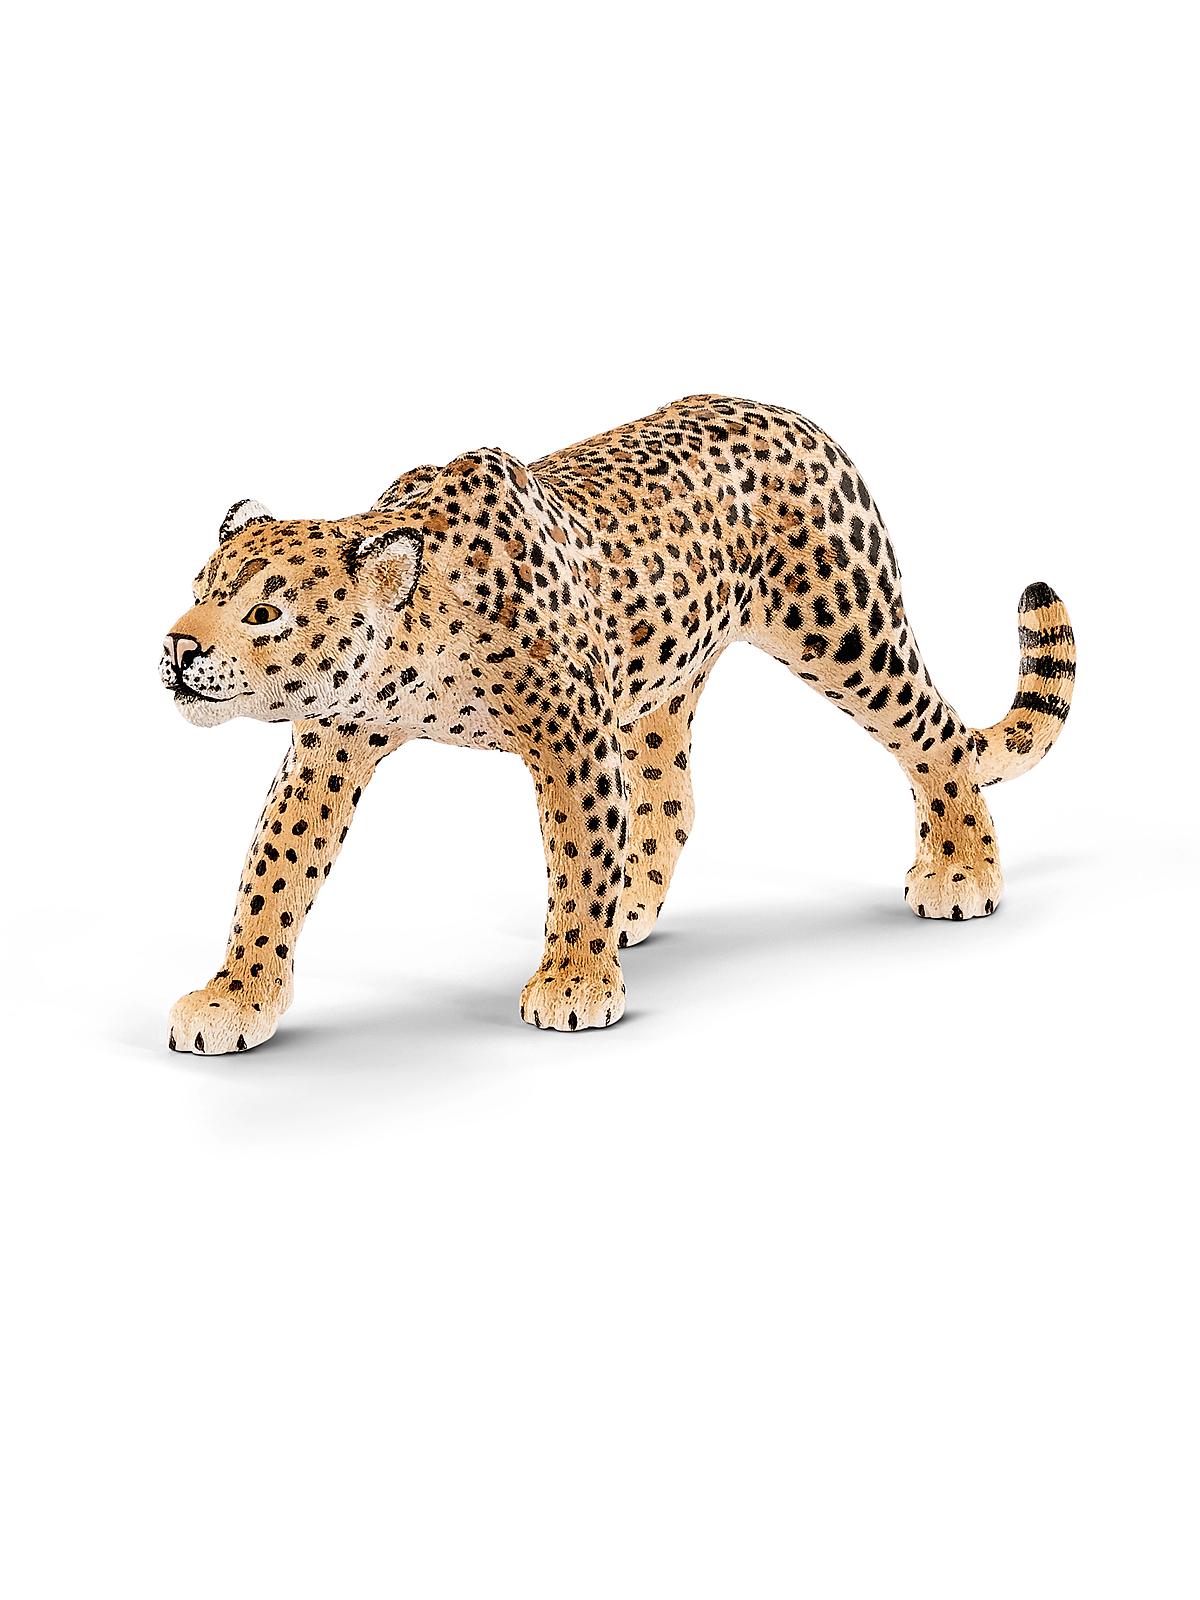 Wild Life Animals Leopard